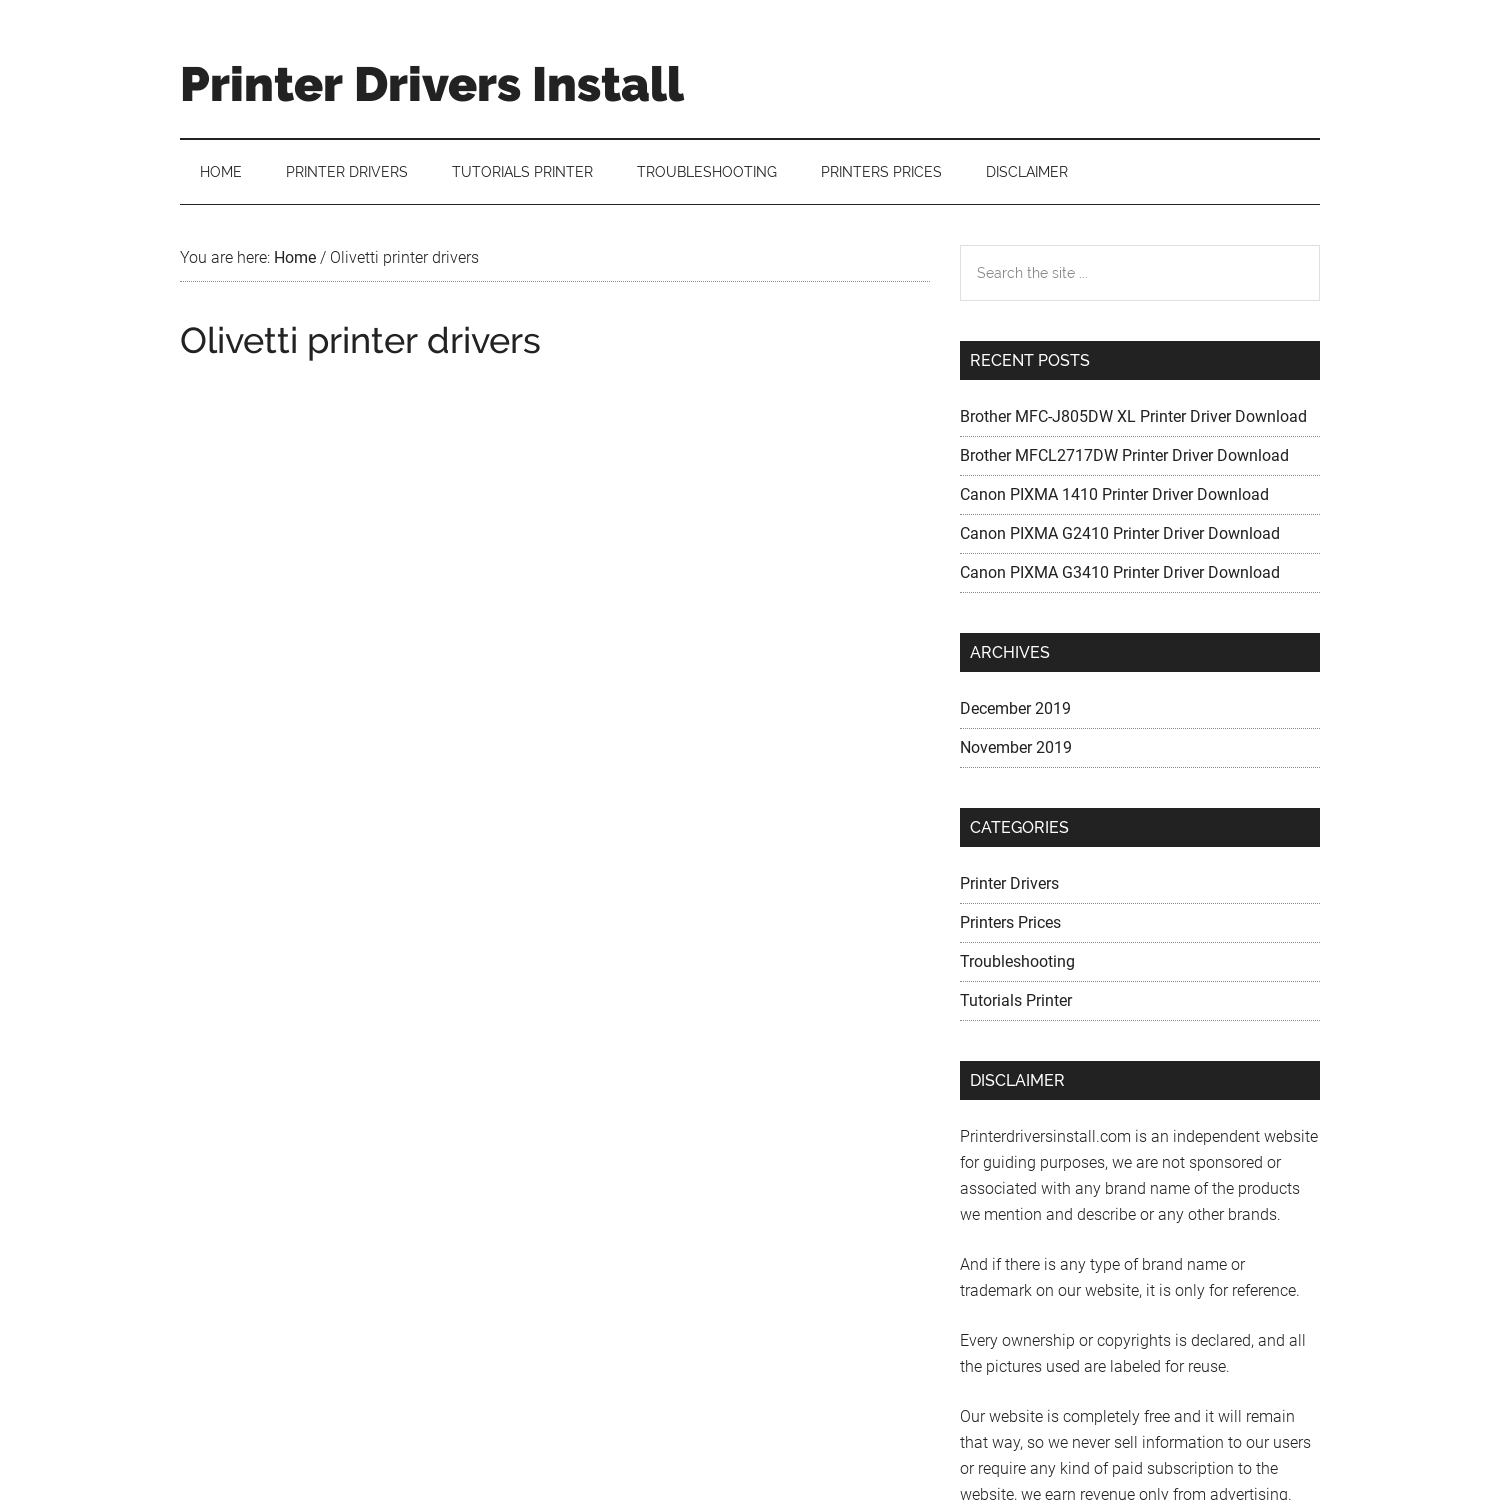 Olivetti printer drivers - Printer Drivers Install